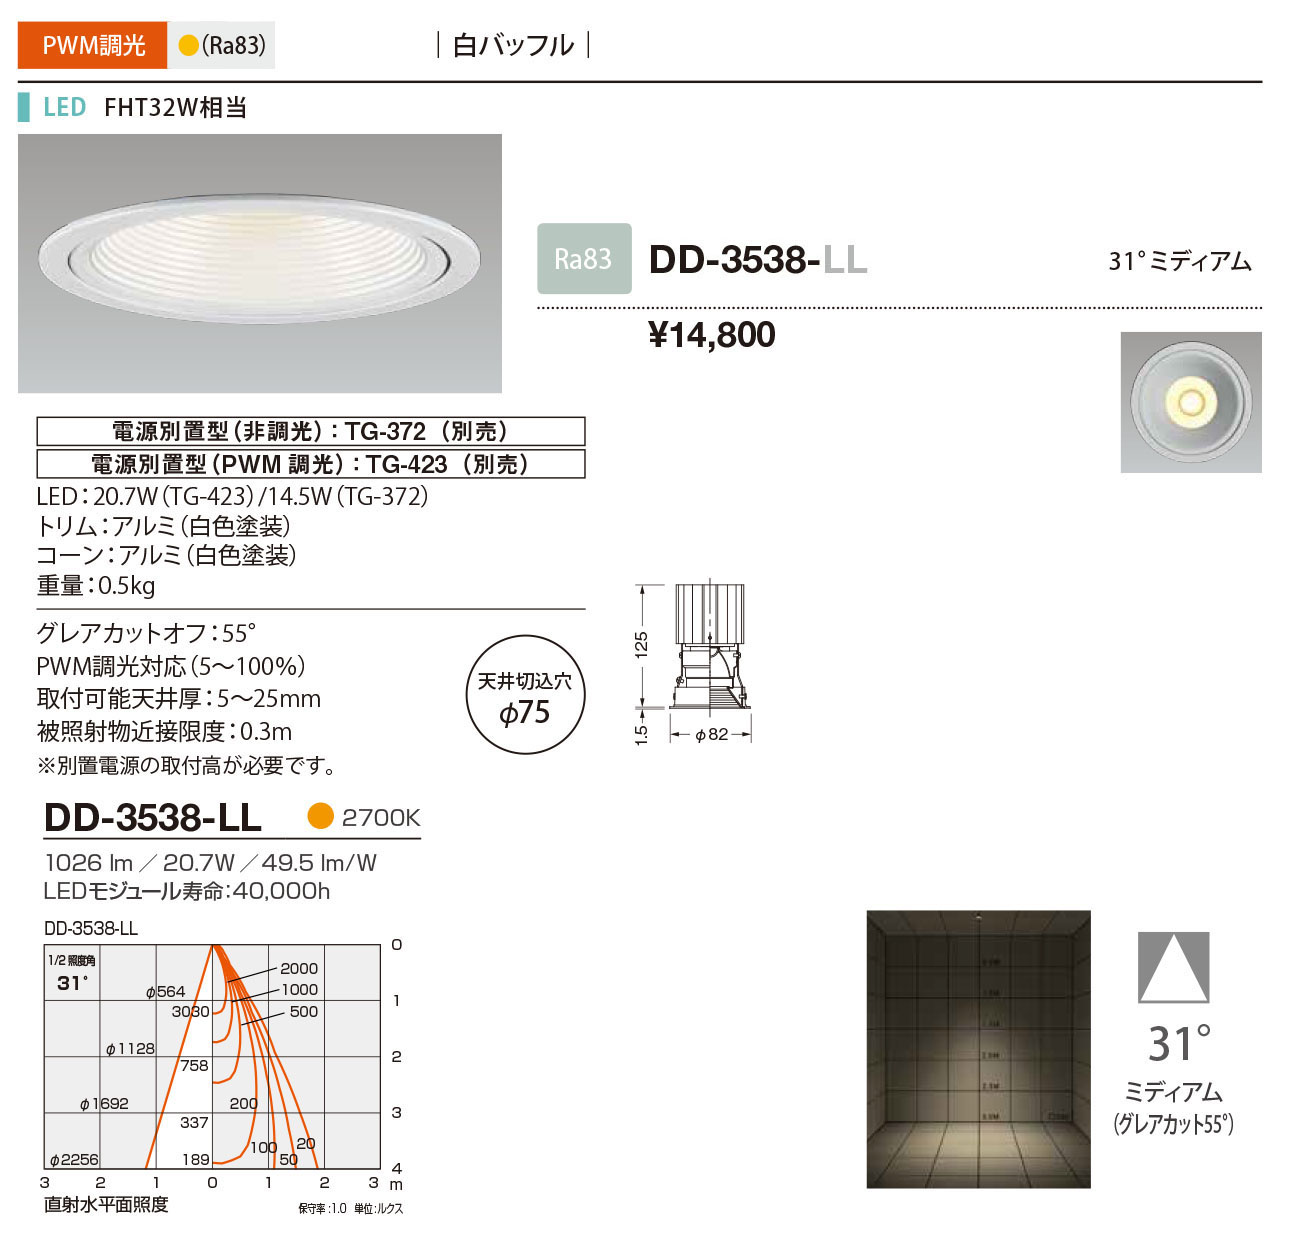 DD-3538-LL RcƖ _ECg obt 75 LED dF  31x